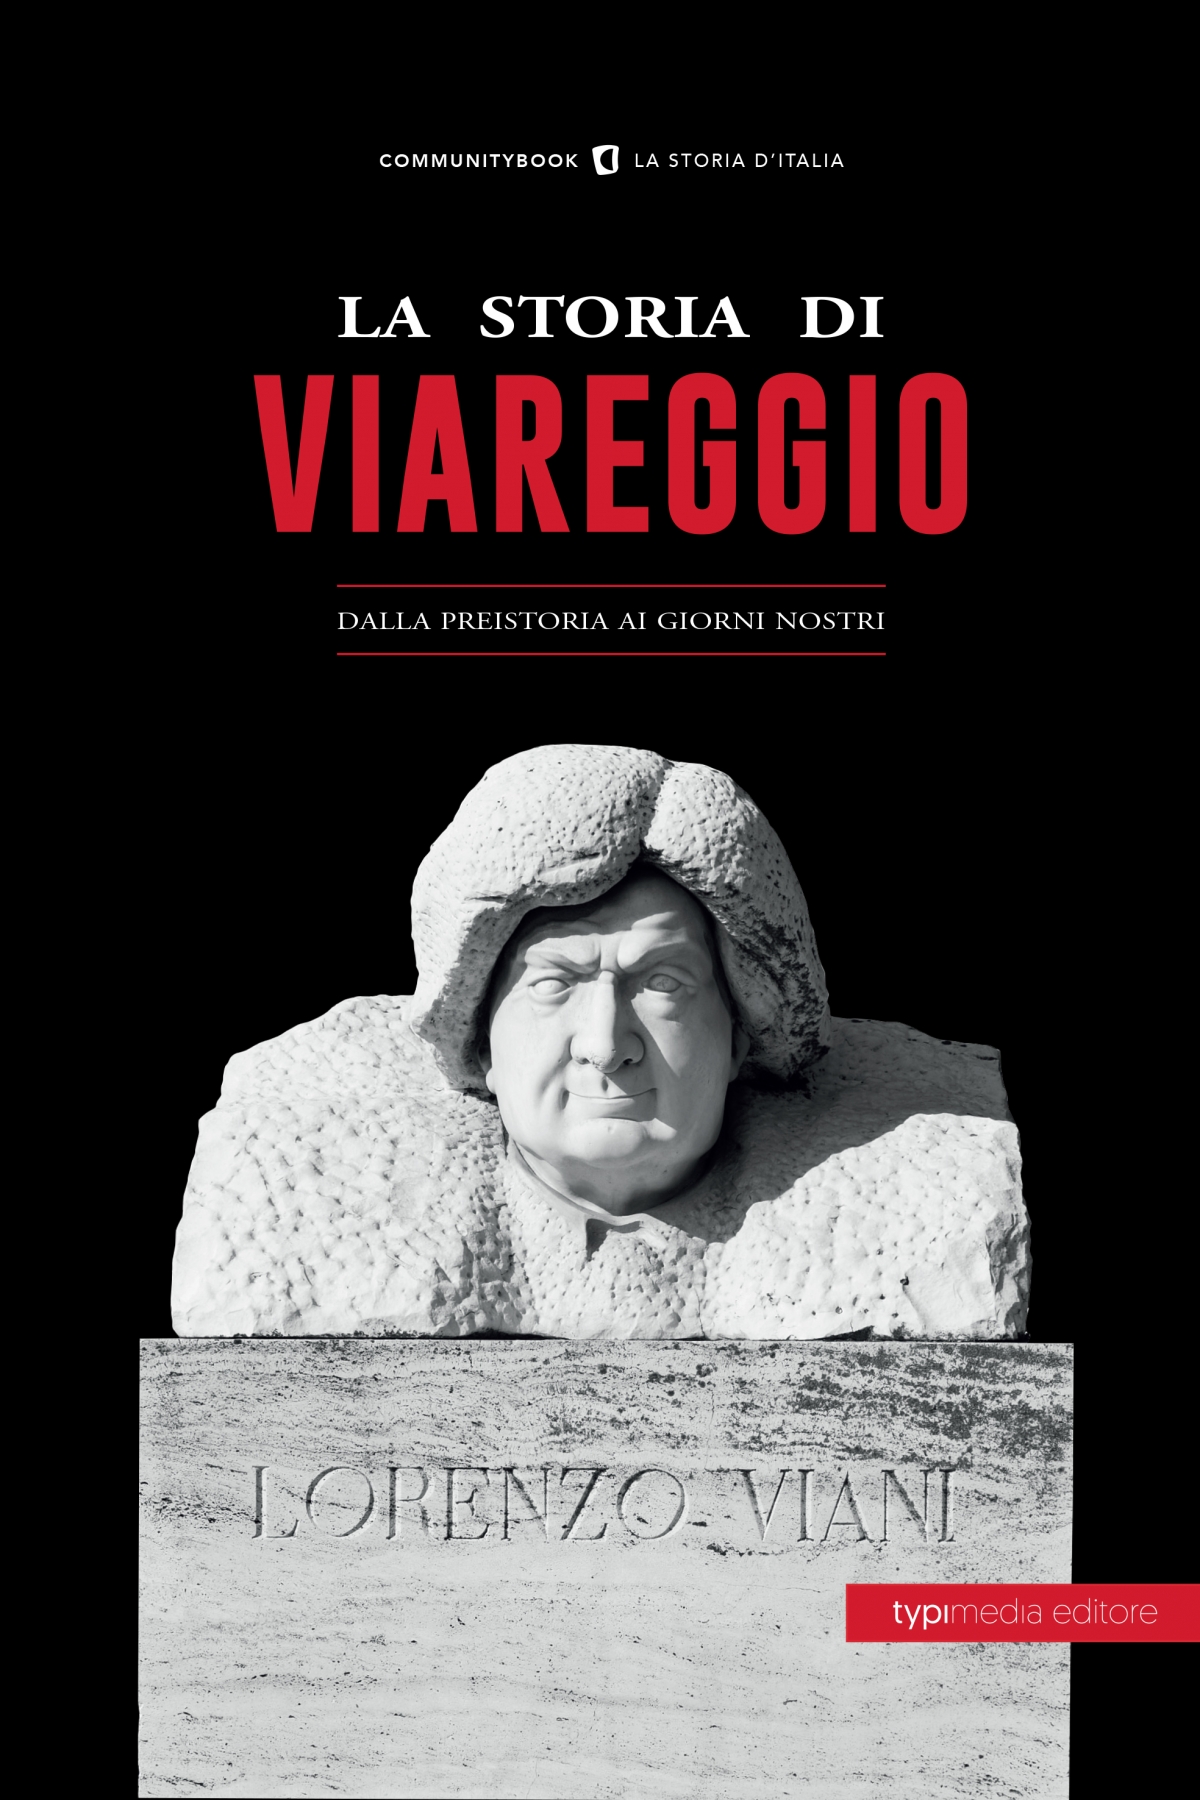 La storia di Viareggio, dalla preistoria ai giorni nostri